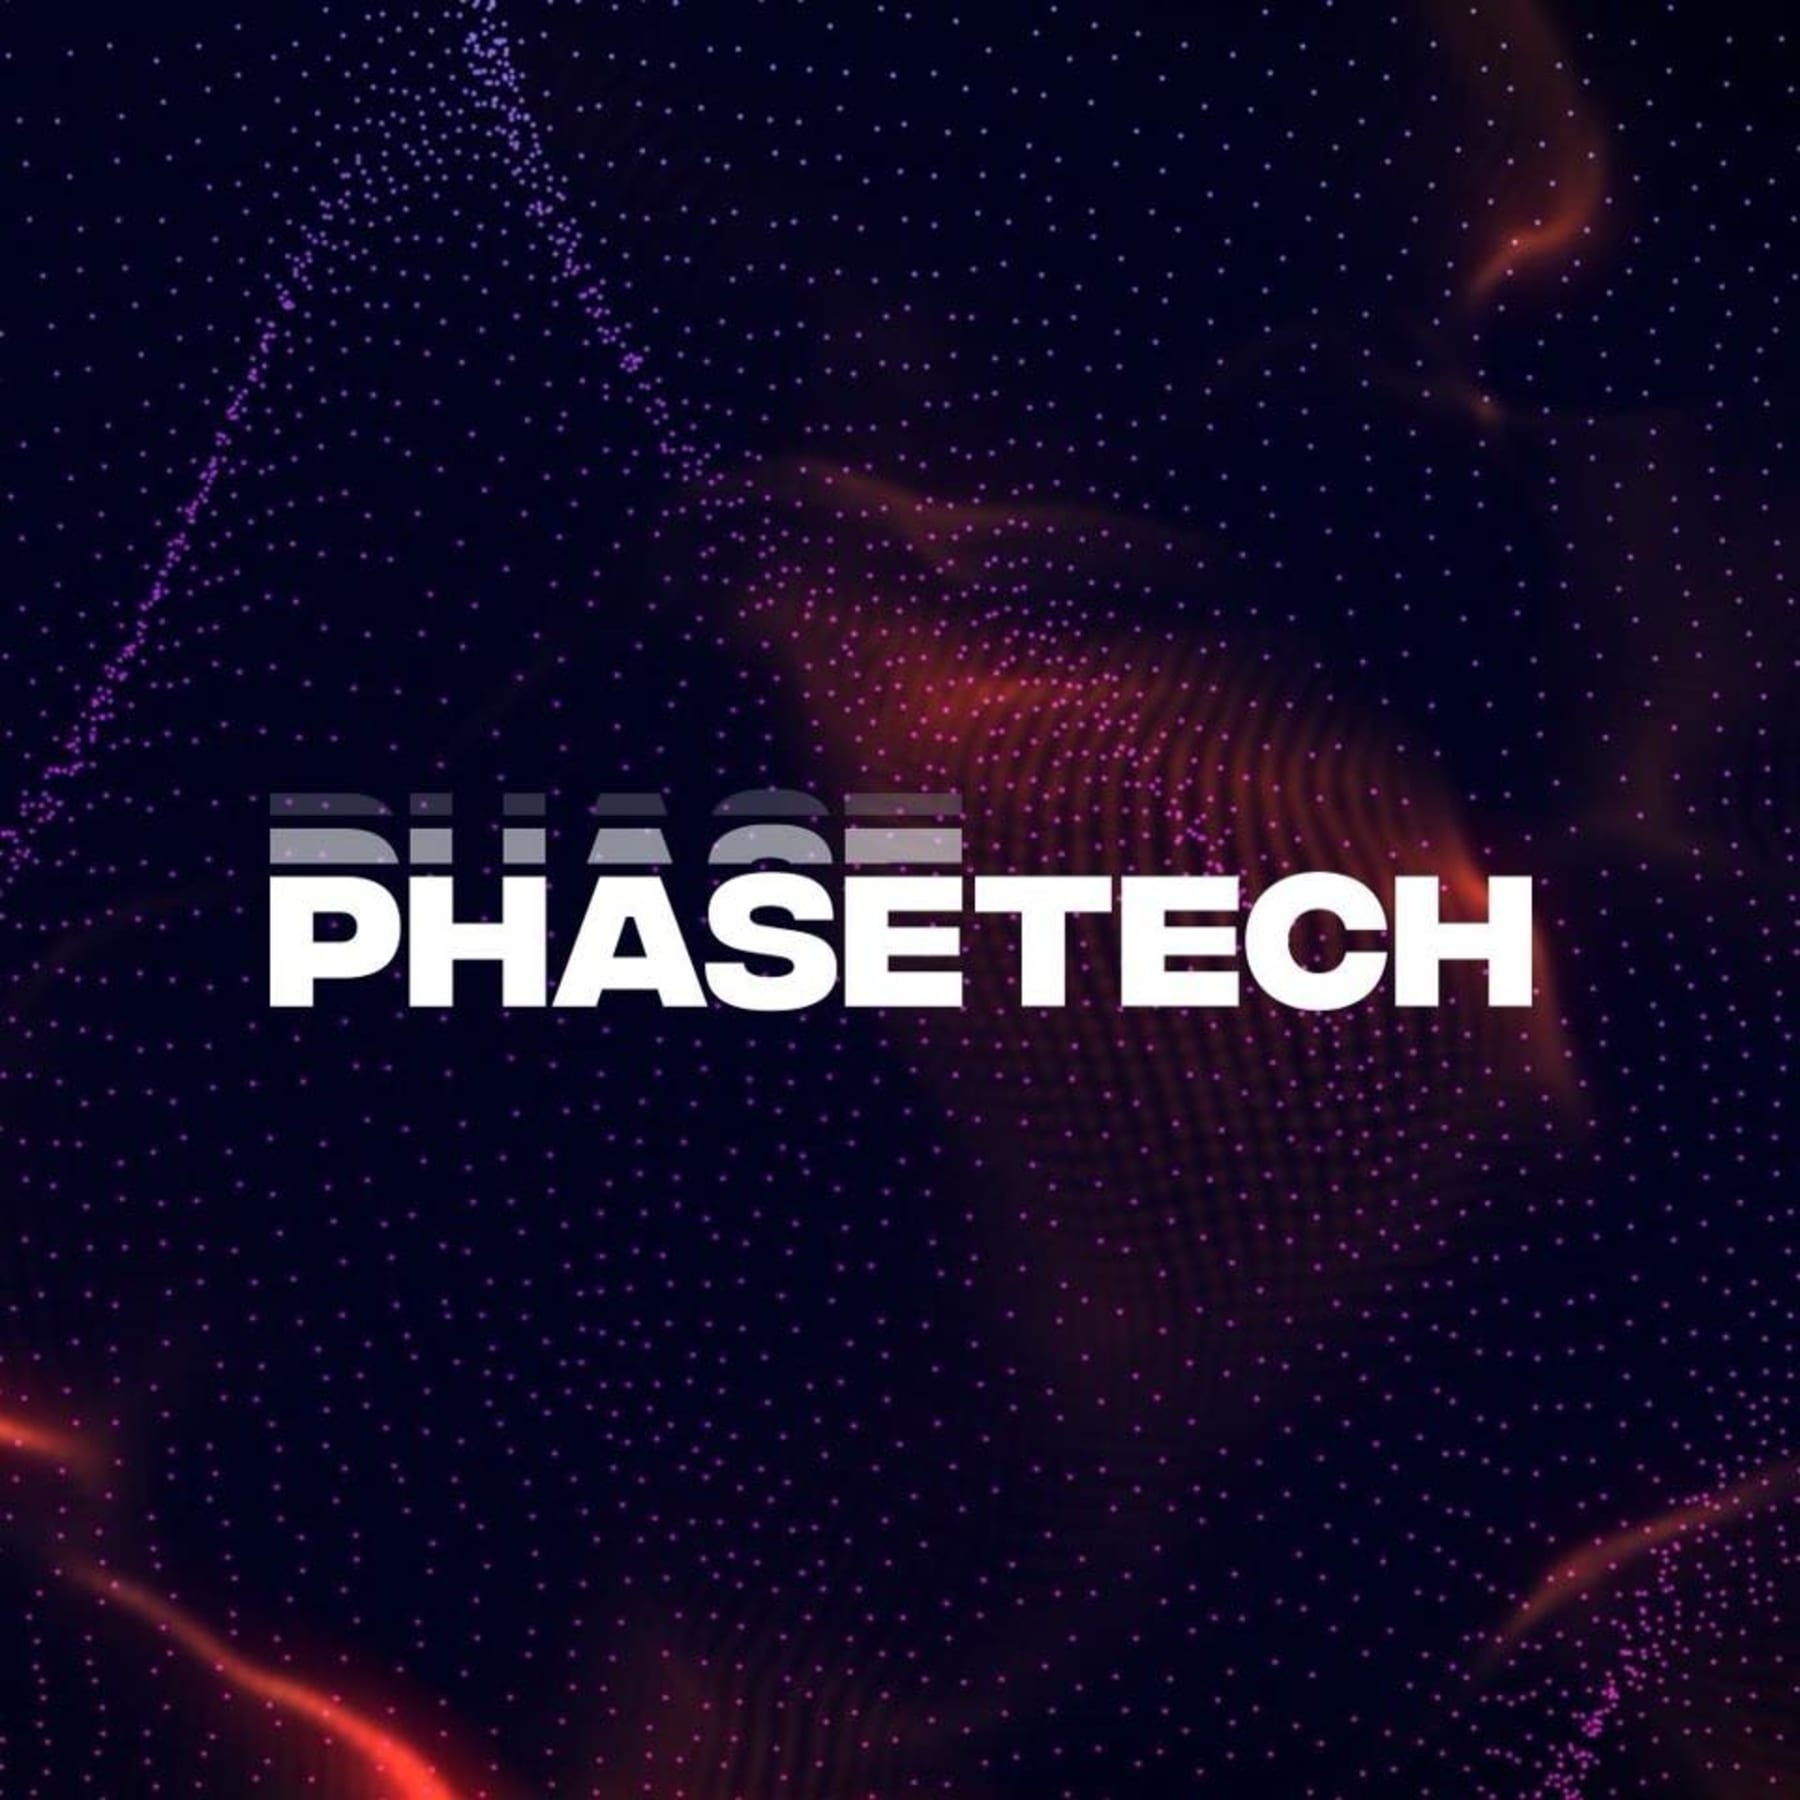 PhaseTech™ — Przedstawiamy nową generację odżywiania sportowców